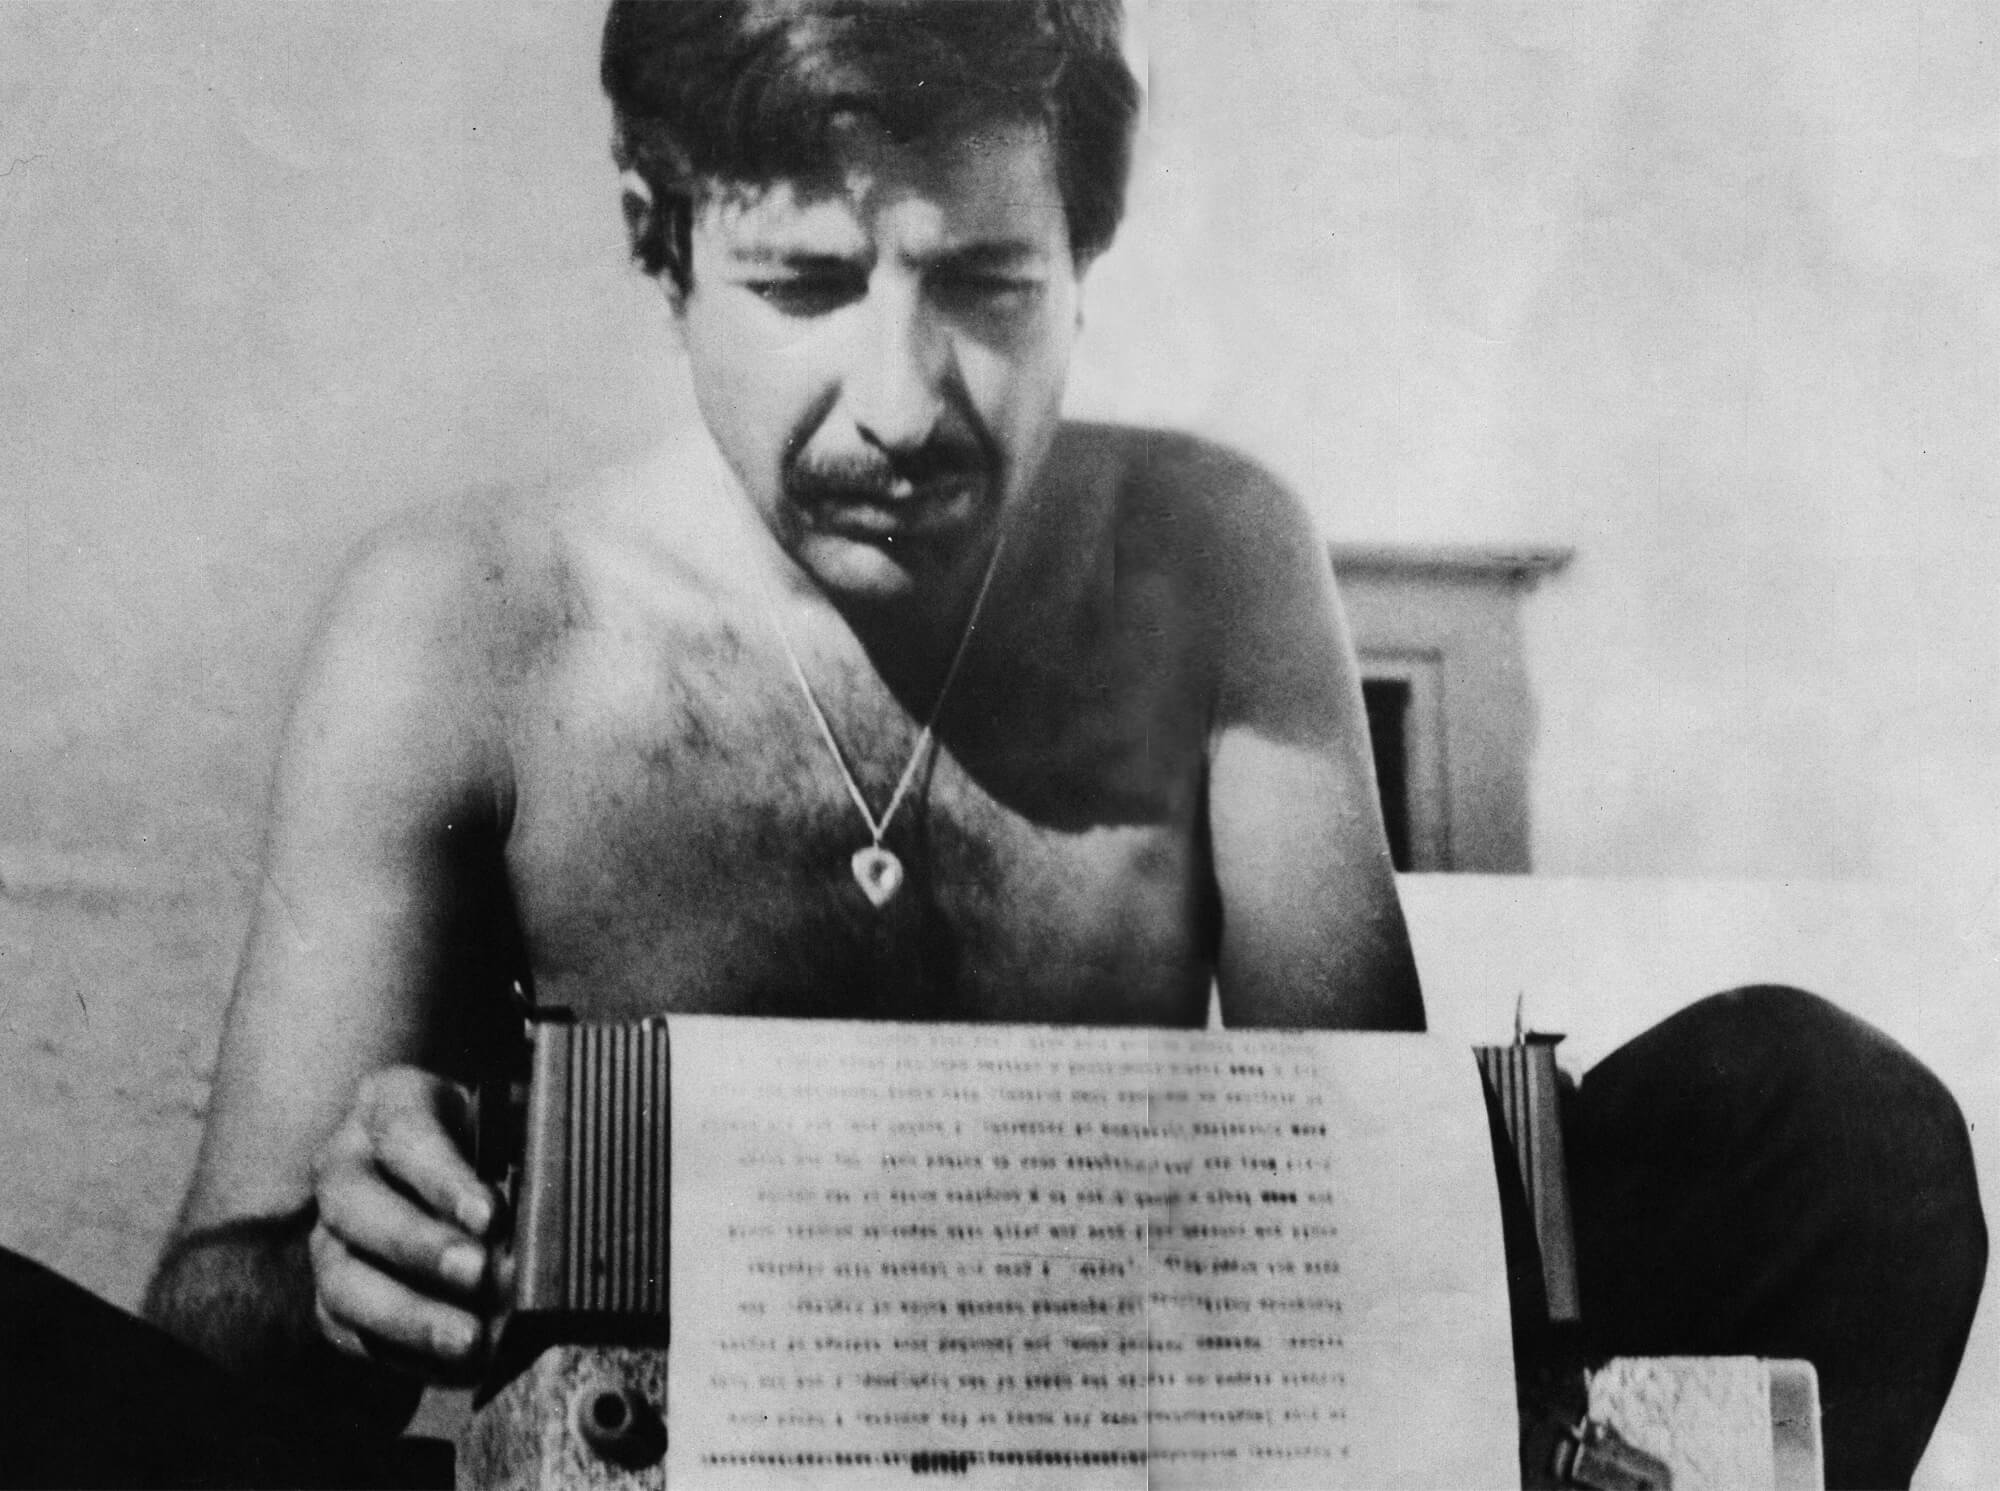 Fotografía de Leonard Cohen joven escribiendo 